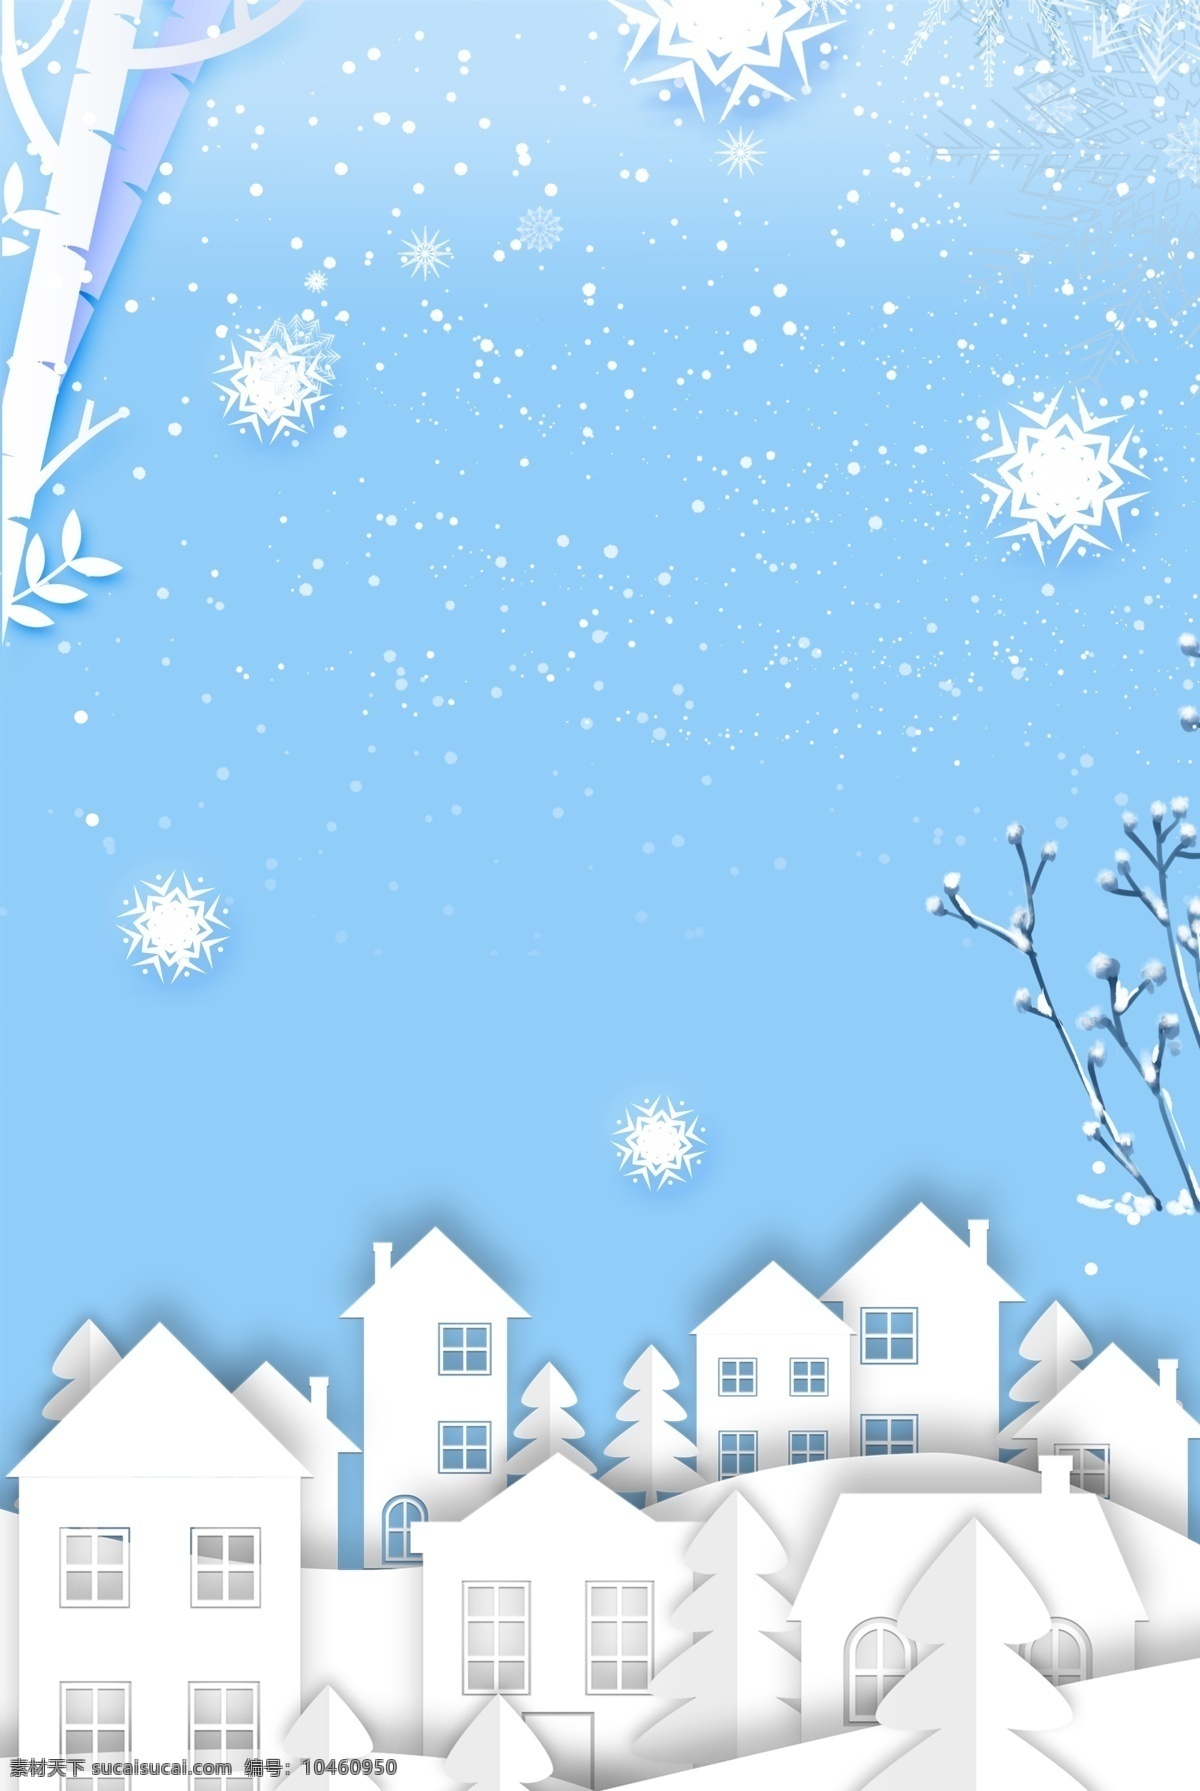 唯美 房屋 剪纸 二十四节气 大雪 宣传海报 房子 雪花 小清新 手绘 树枝